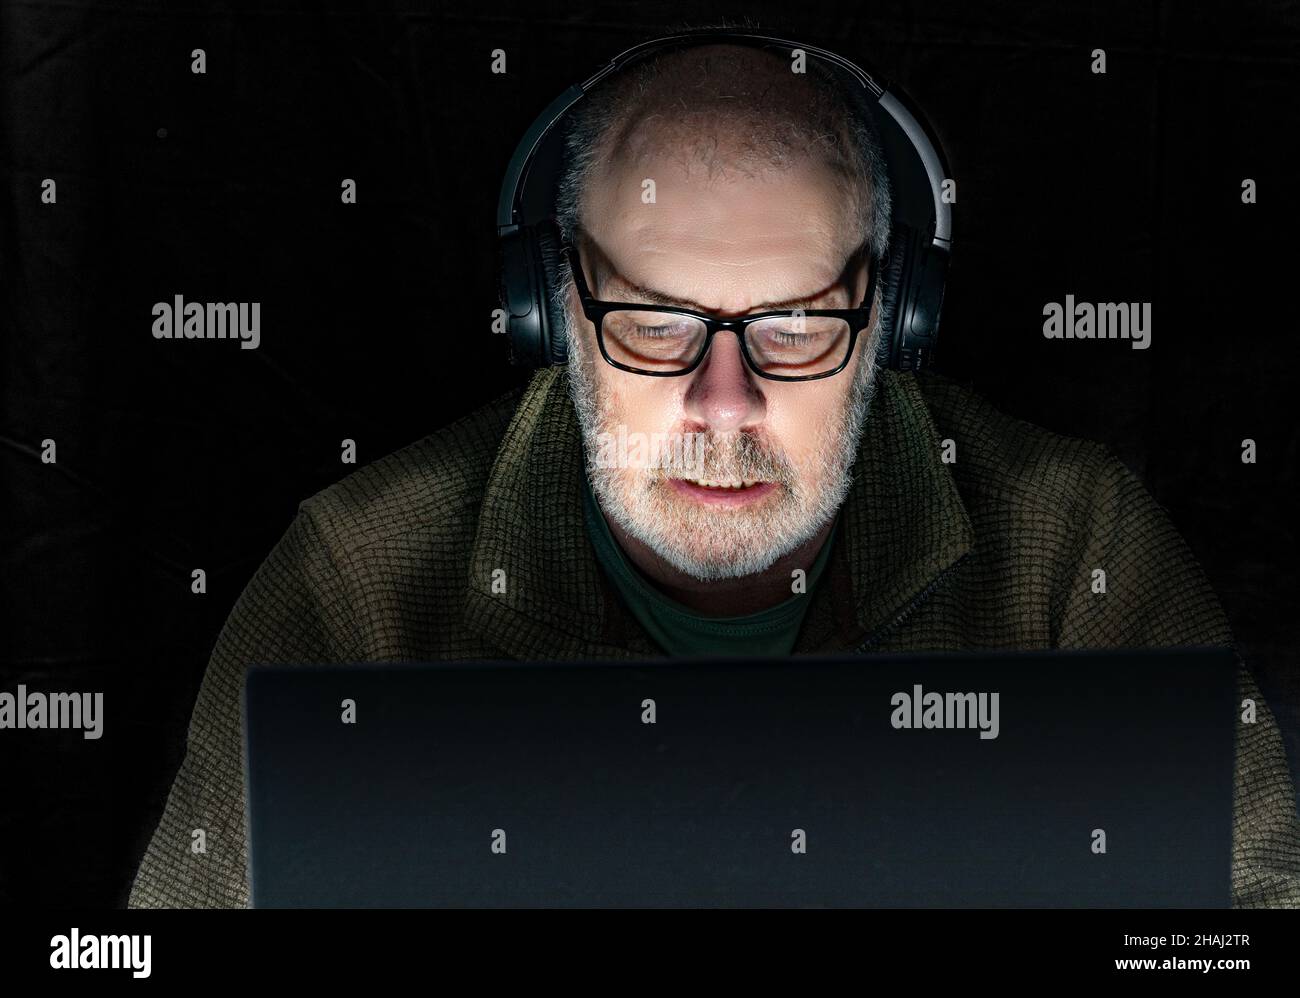 Ein weißgrauer bärtiger Mann hört Musik über Kopfhörer. Dezente Beleuchtung. Stockfoto